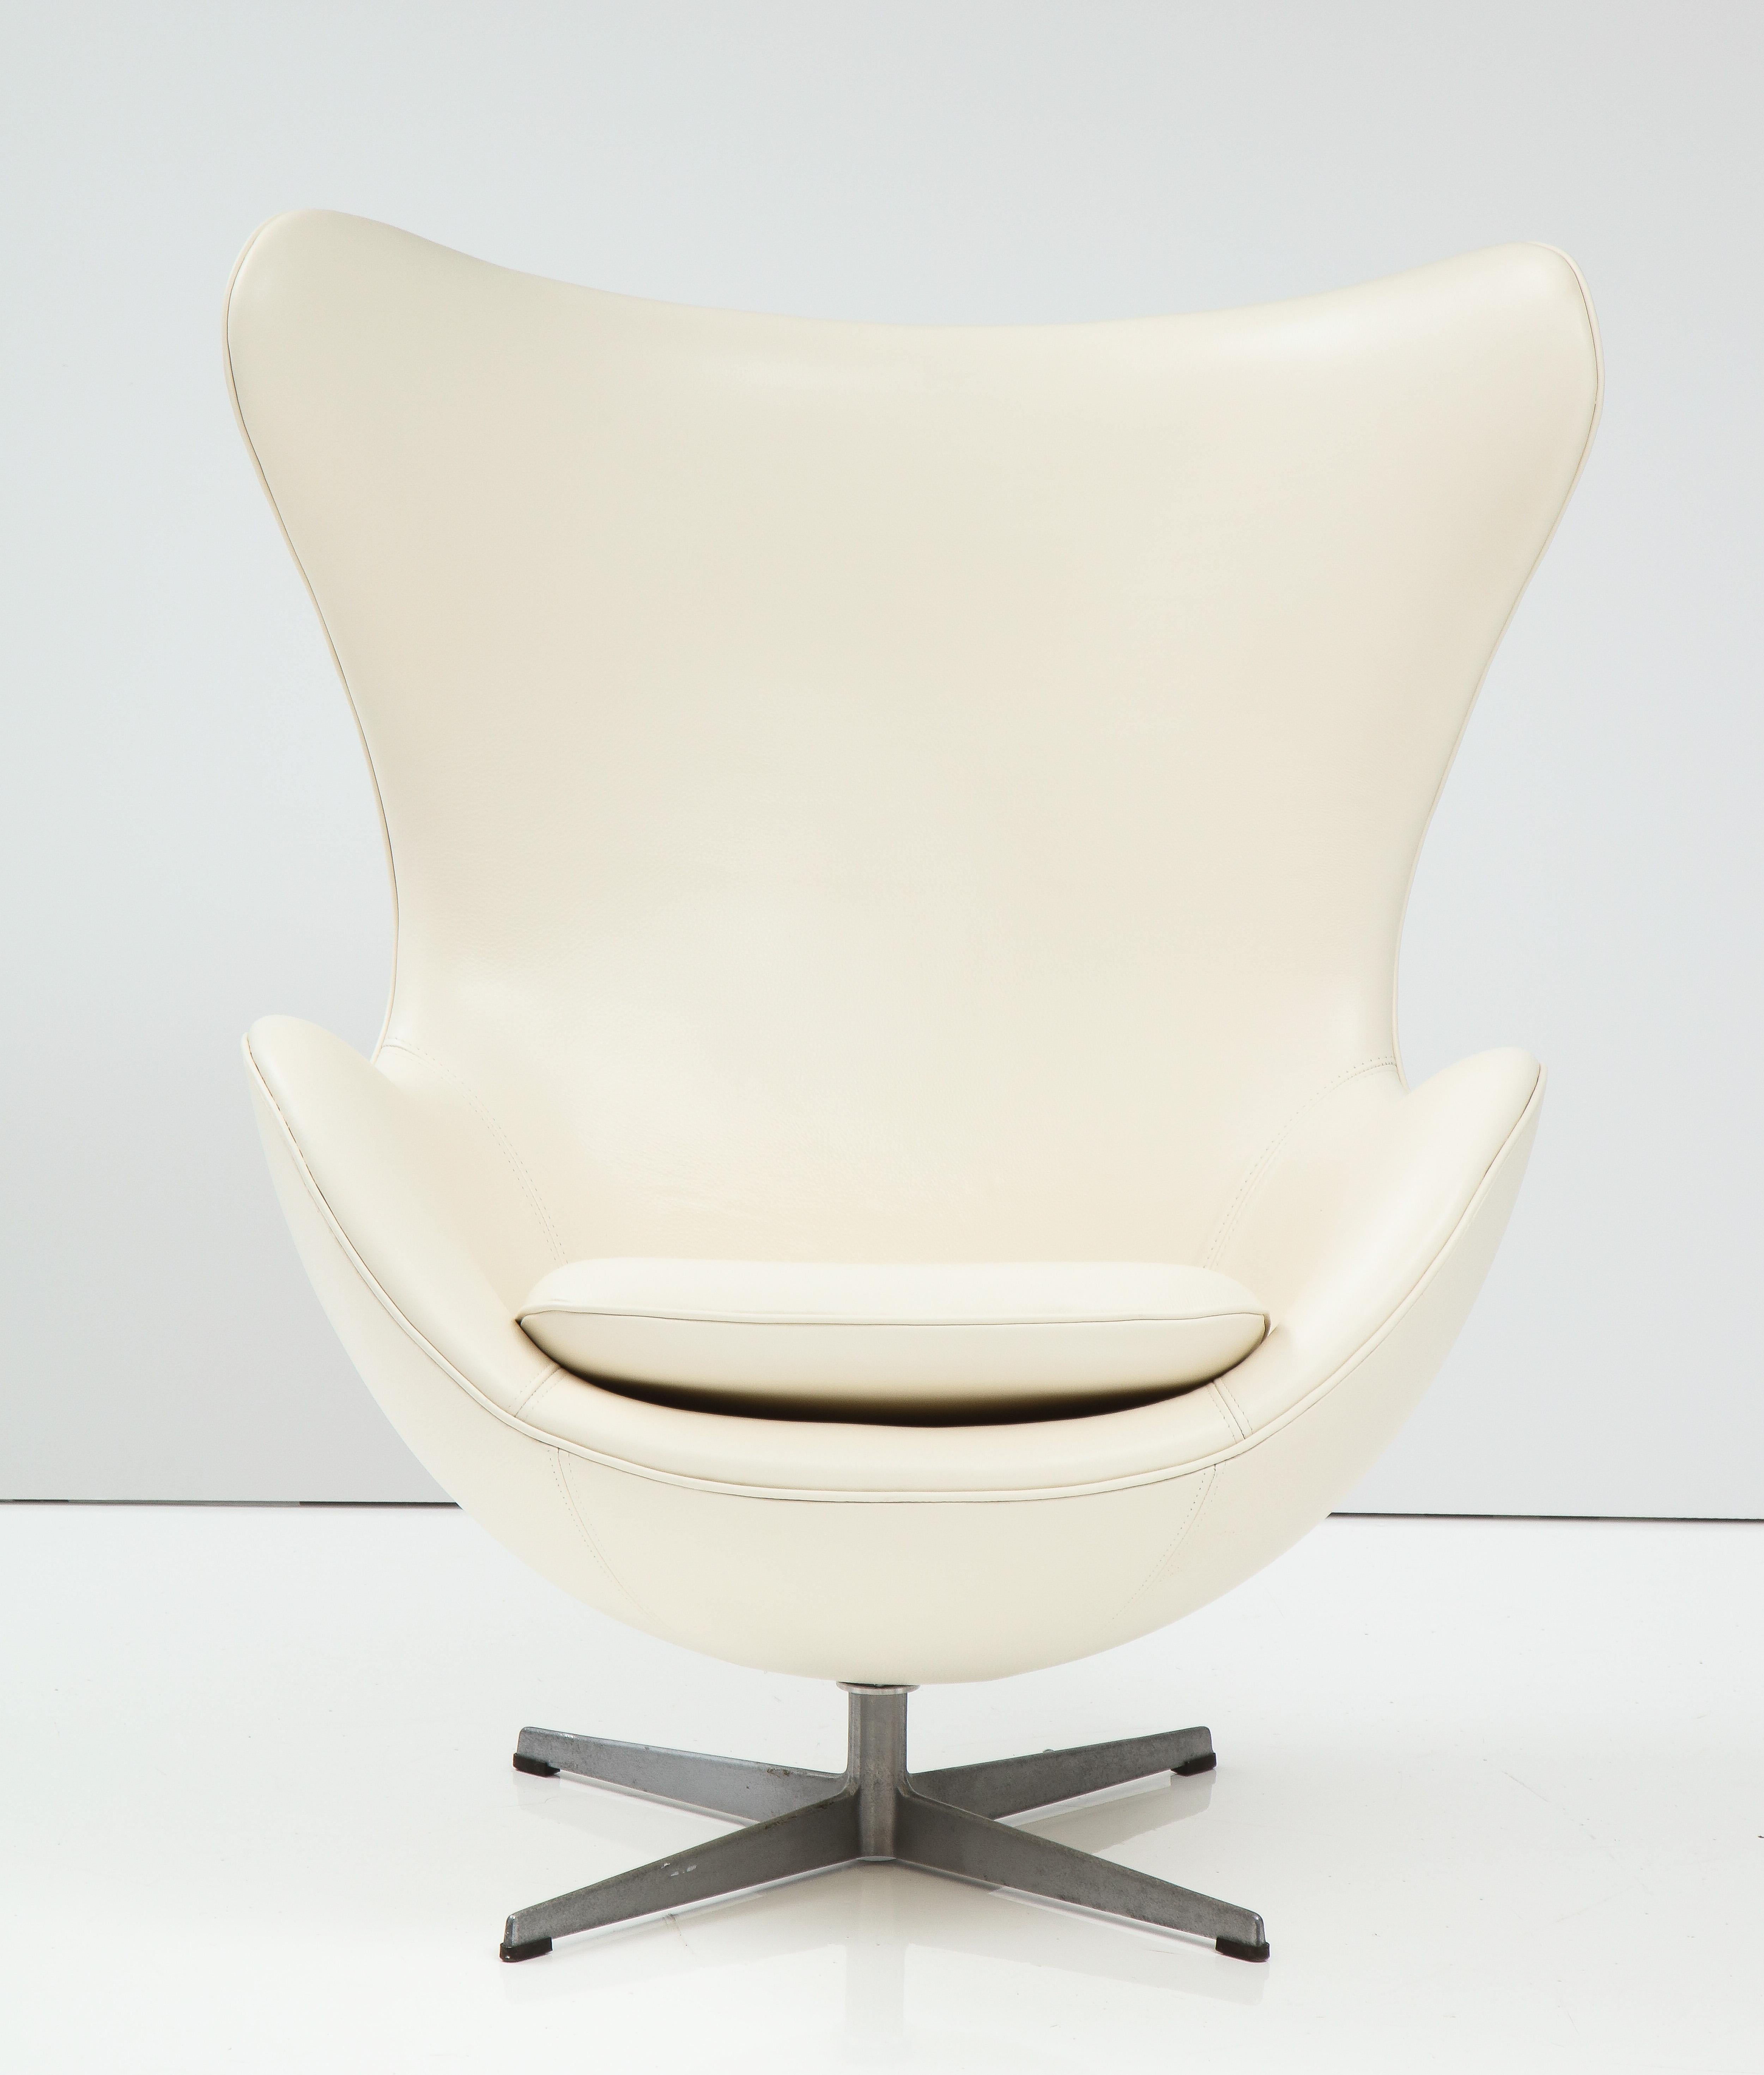 Der klassische und ikonische Stuhl 